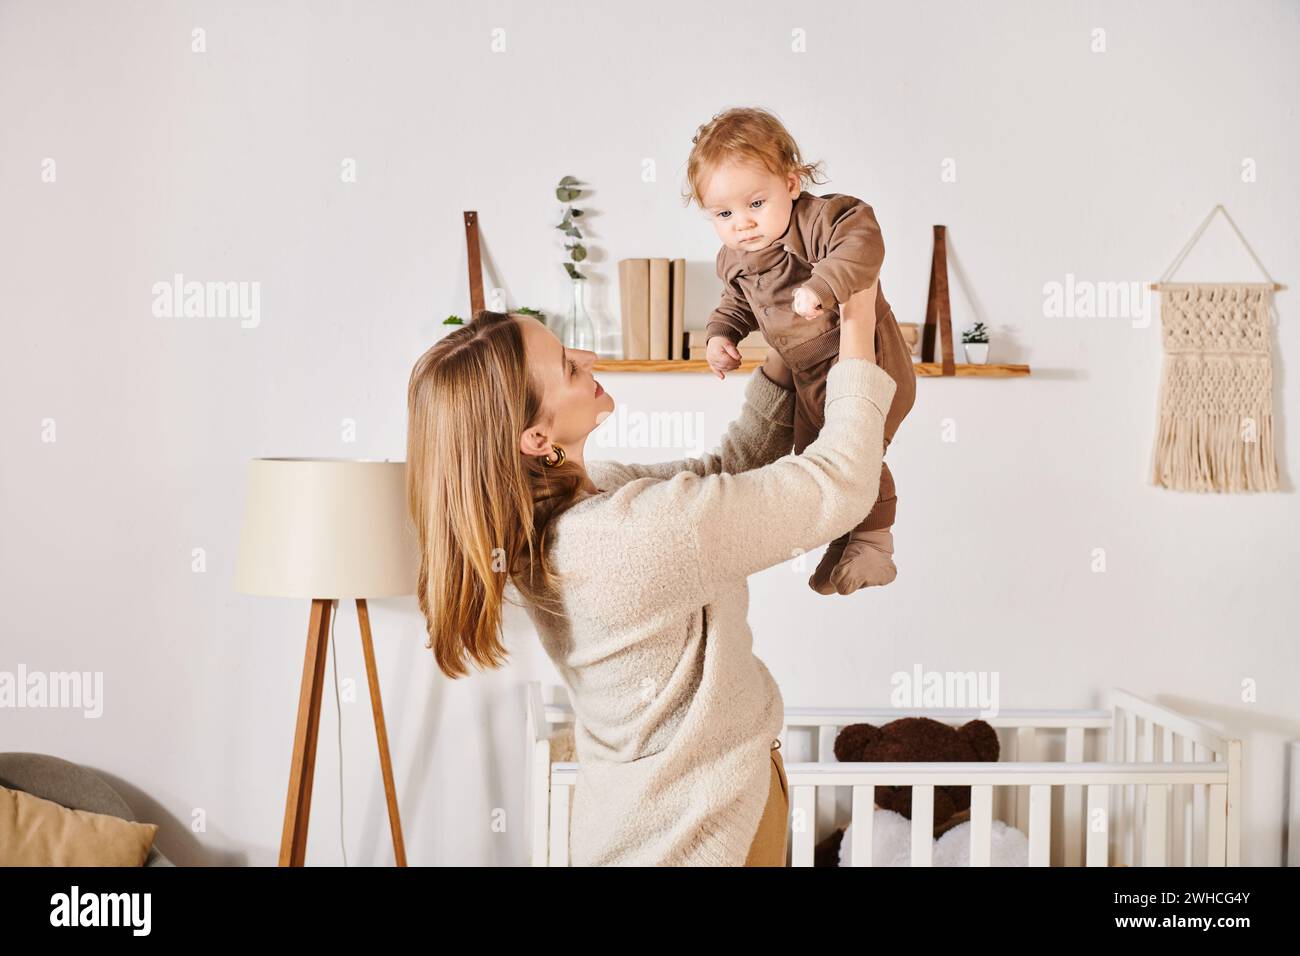 Junge, fröhliche Frau, die mit dem süßen kleinen Sohn im Kinderzimmer spielt und Spaß hat, glückliche Mutterschaft Stockfoto